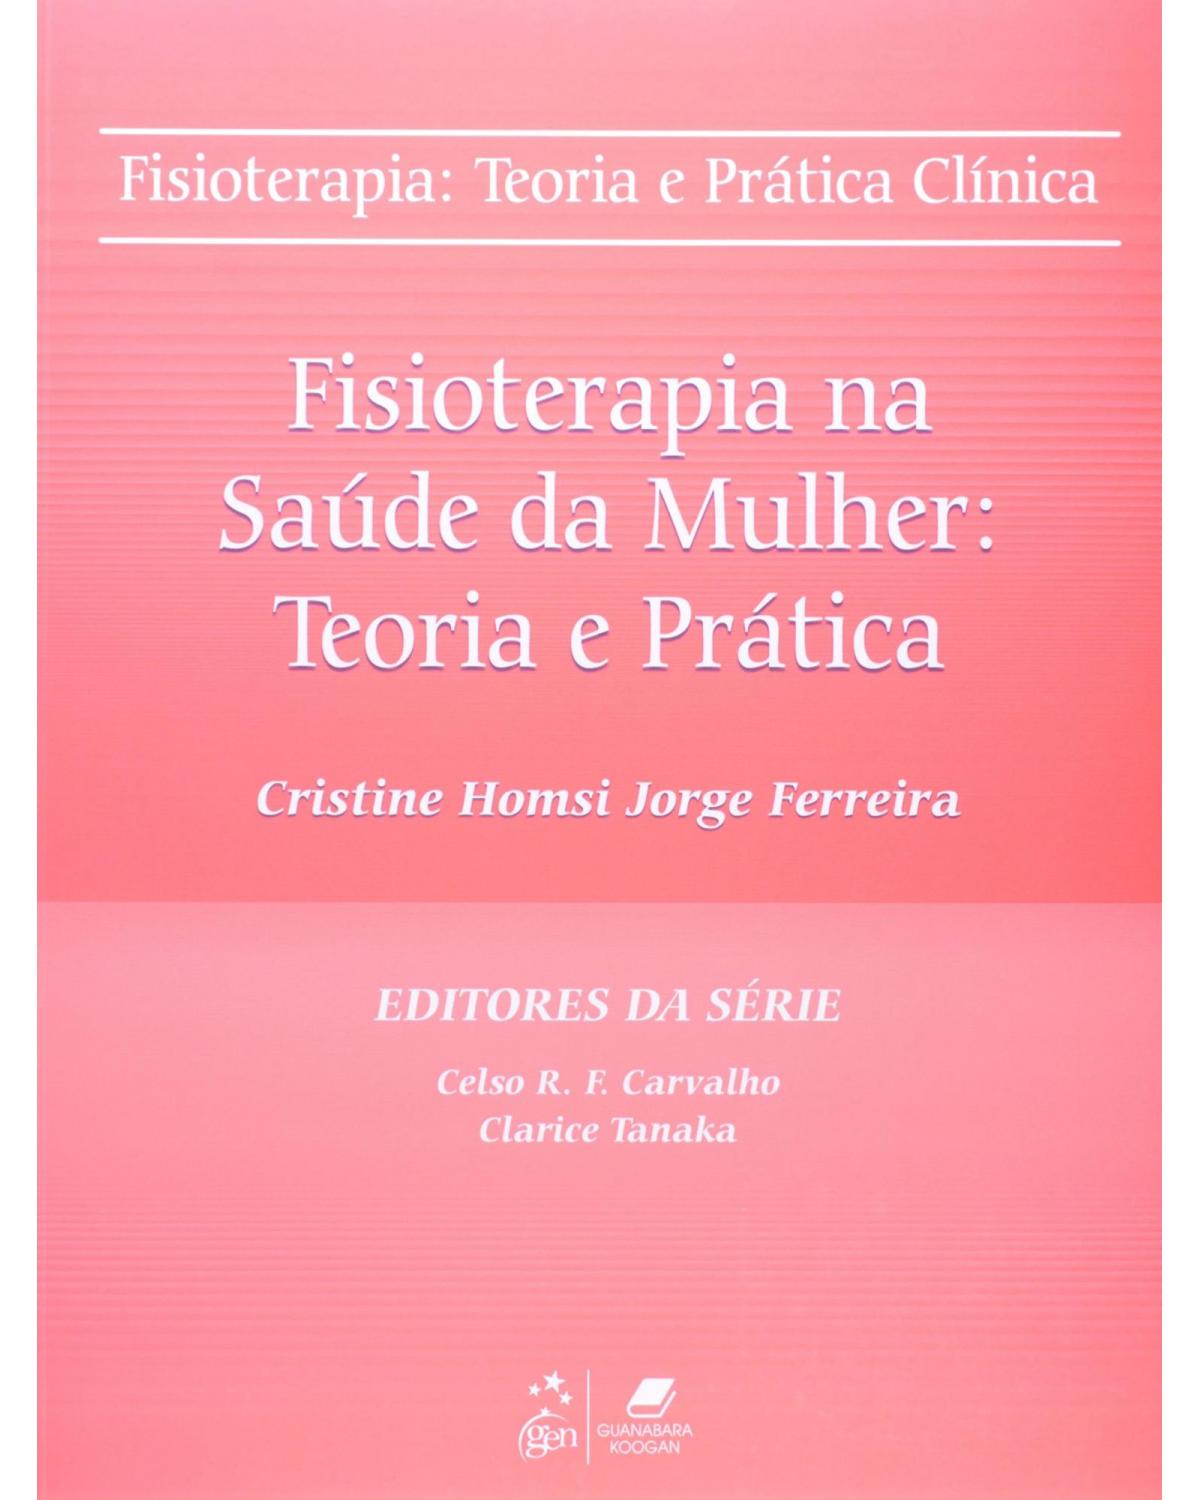 Fisioterapia na saúde da mulher - Teoria e prática - 1ª Edição | 2011